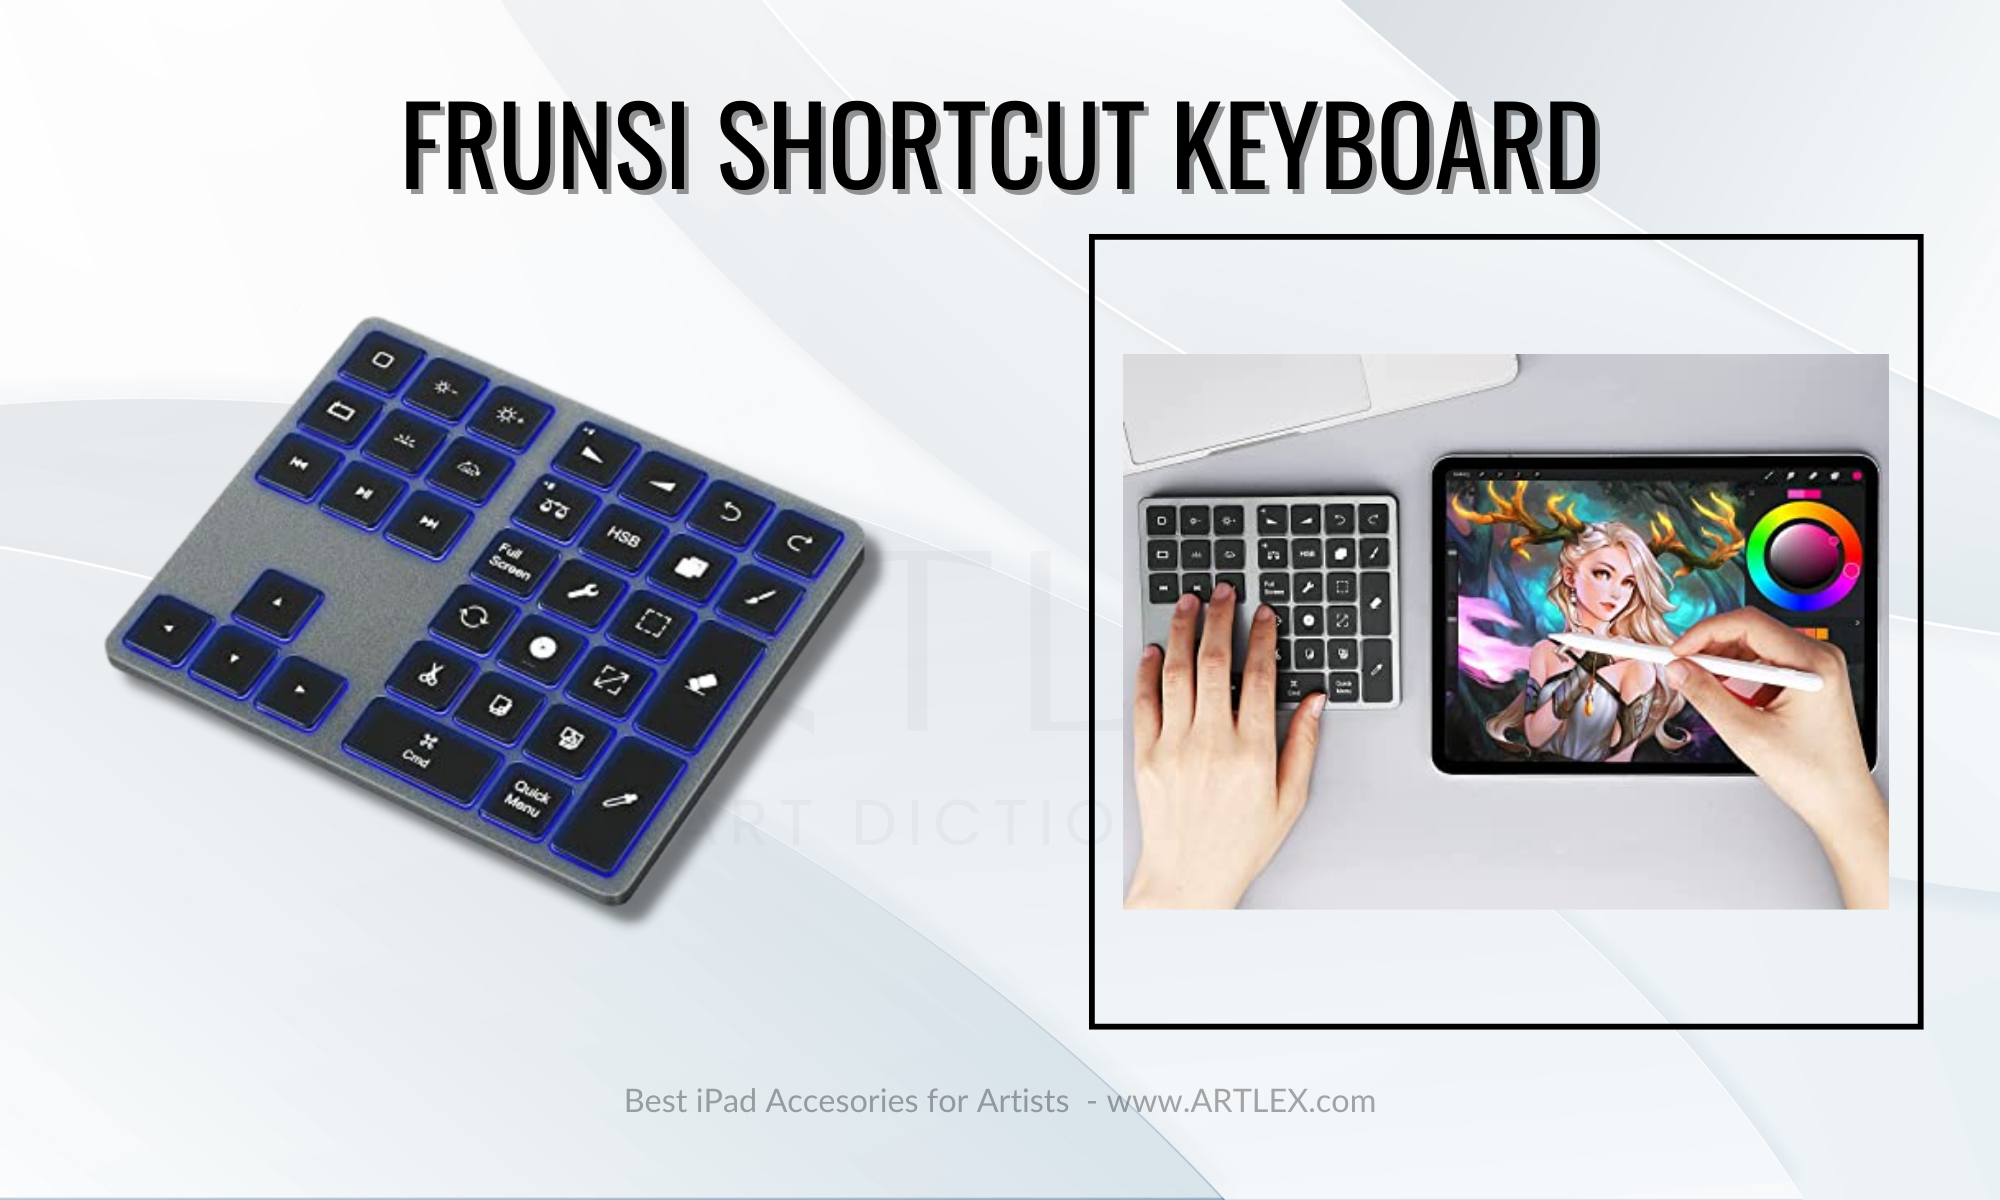 Second Best Shortcut Keyboard for iPad — Frunsi Wireless Keyboard